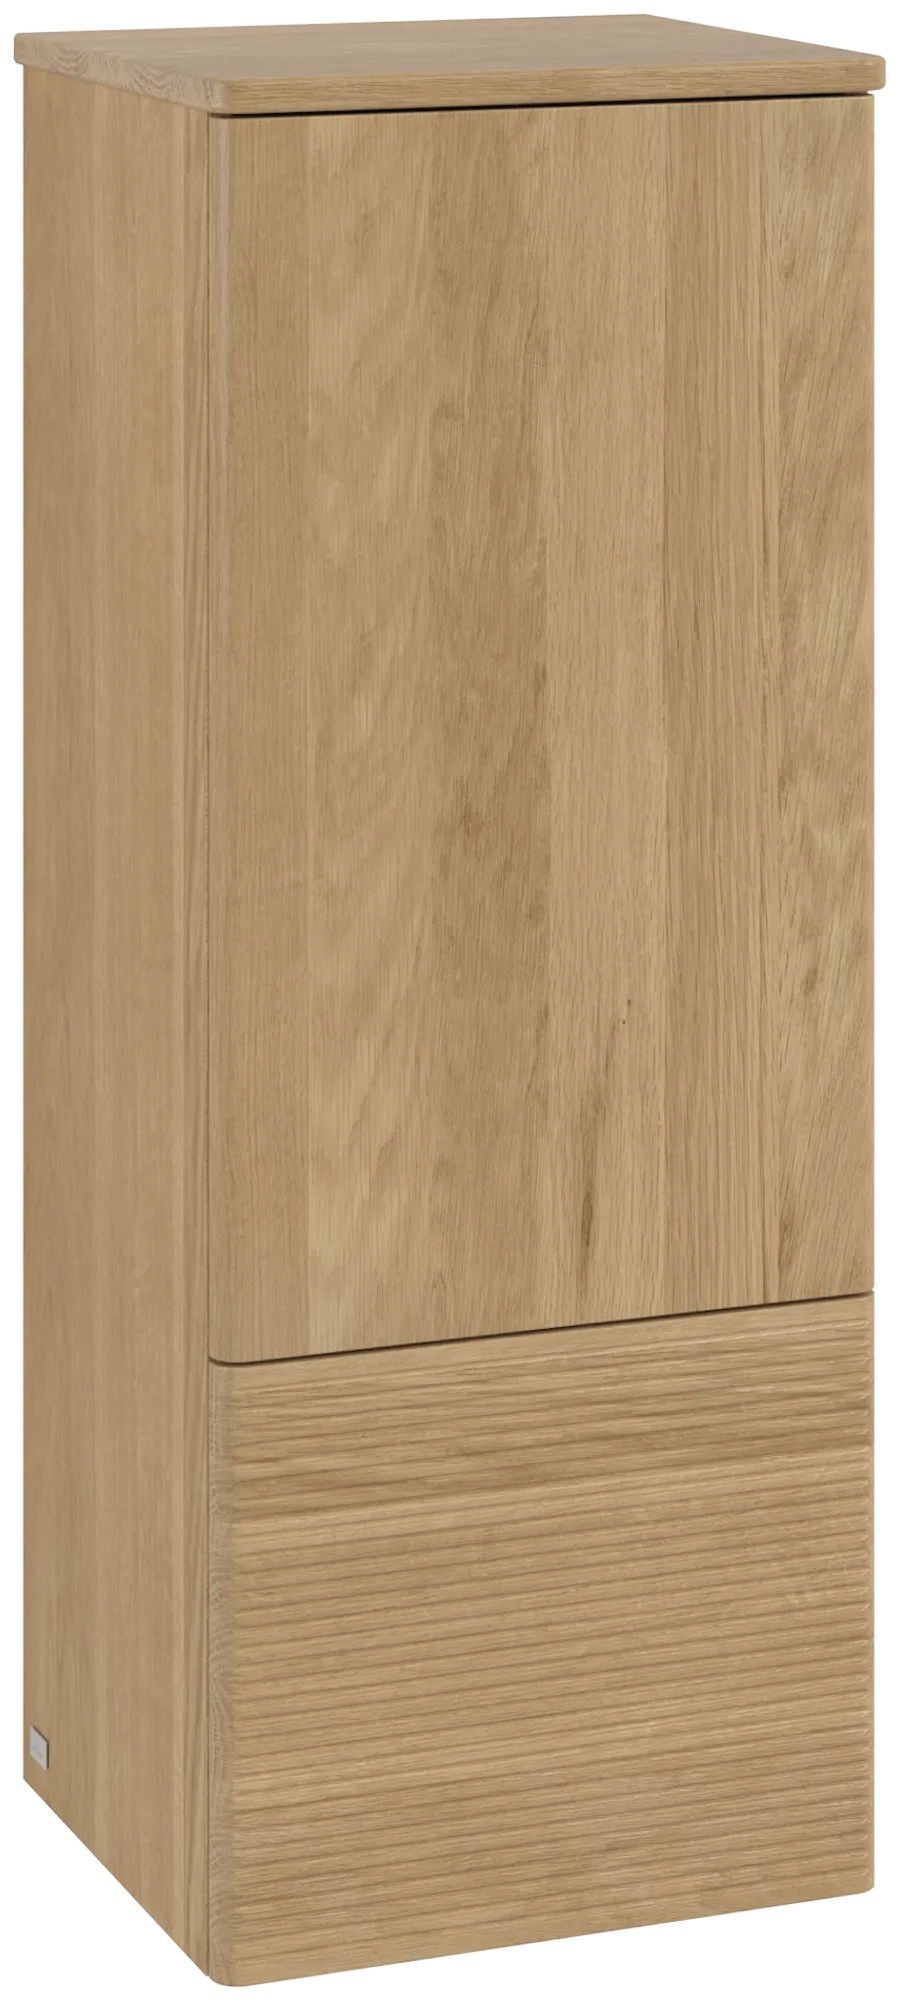 Bild von VILLEROY BOCH Antao Mittelschrank, 1 Tür, 414 x 1039 x 356 mm, Front mit Struktur, Honey Oak / Honey Oak #K44100HN